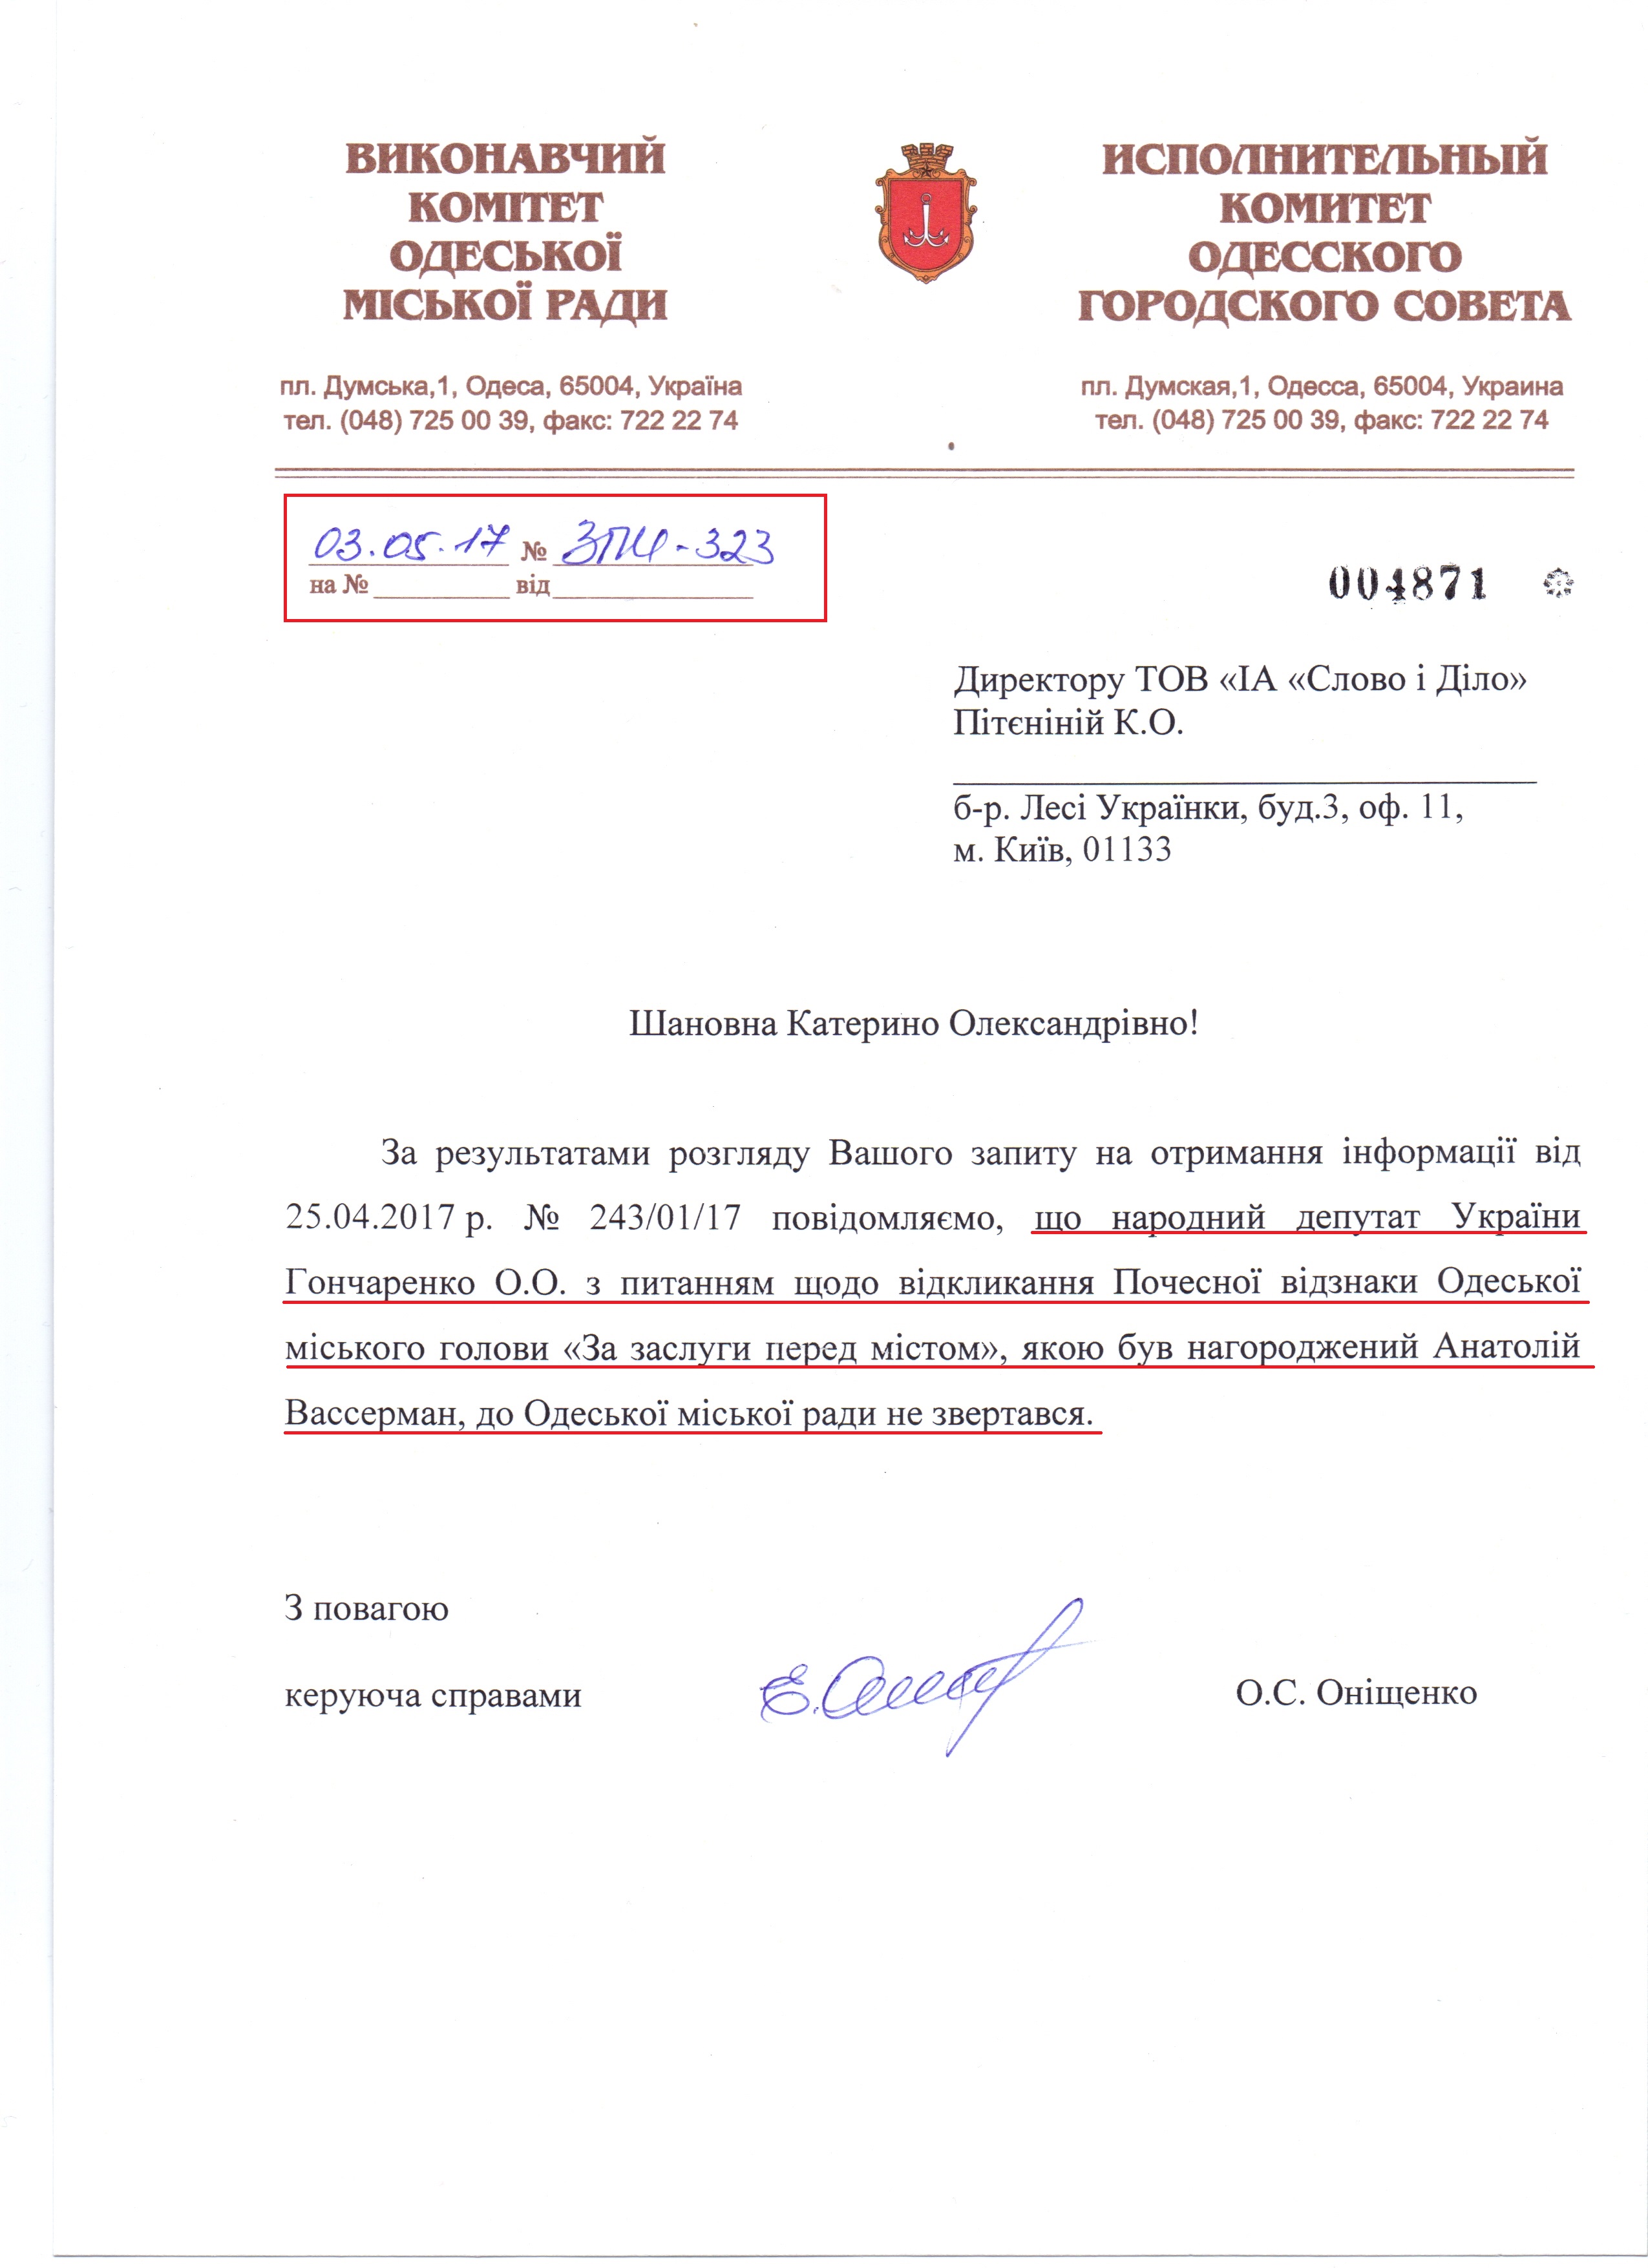 лист Виконавчого комітету Одеської міської ради №ЗПИ-323 від 3 травня 2017 року